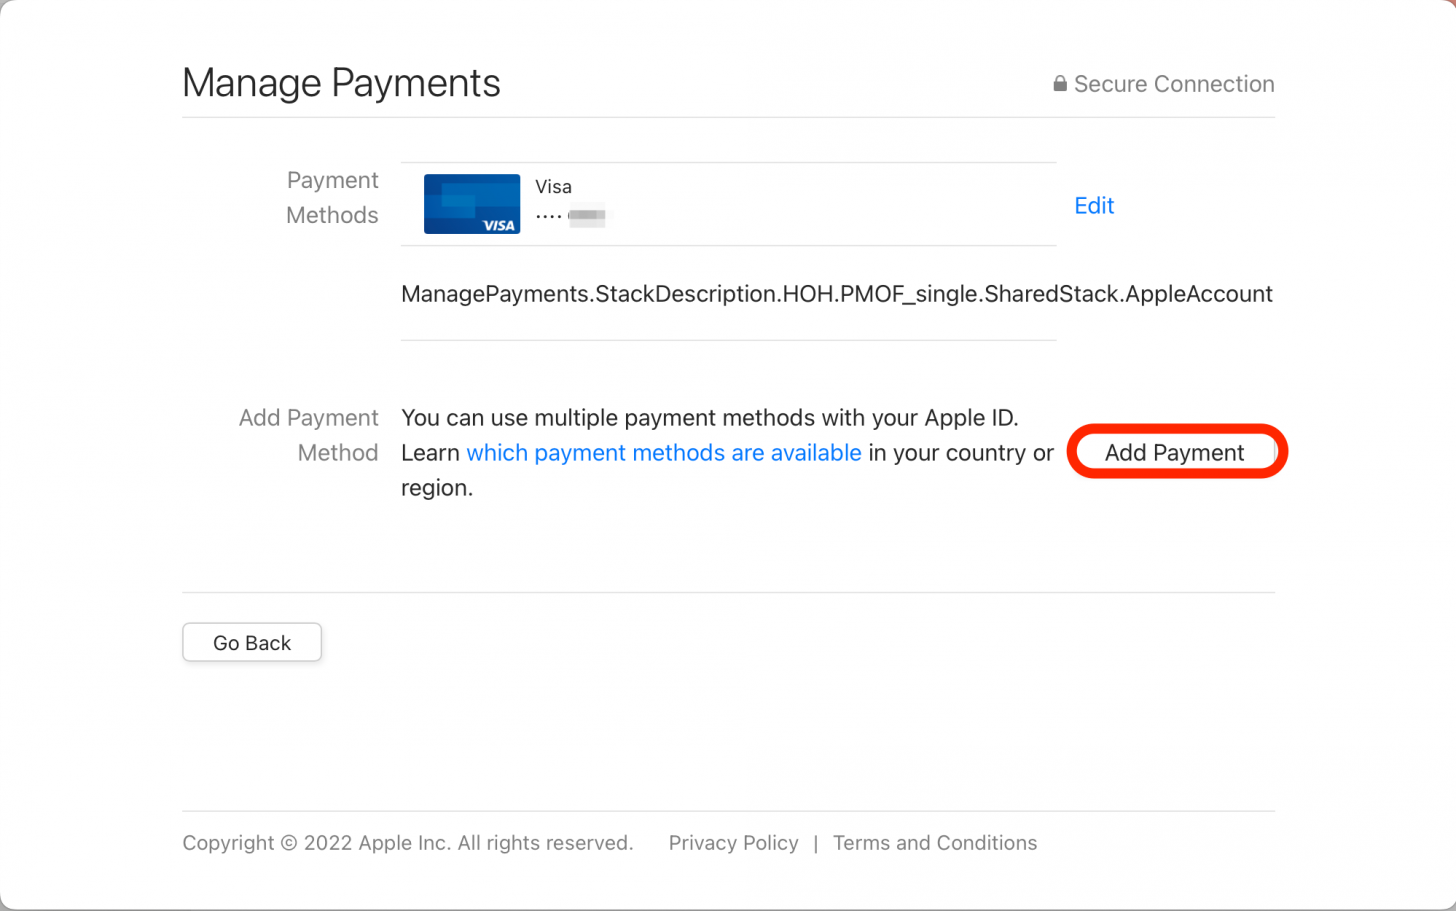 Klicken Sie auf Zahlung hinzufügen, um eine neue App Store-Zahlungsmethode hinzuzufügen. 